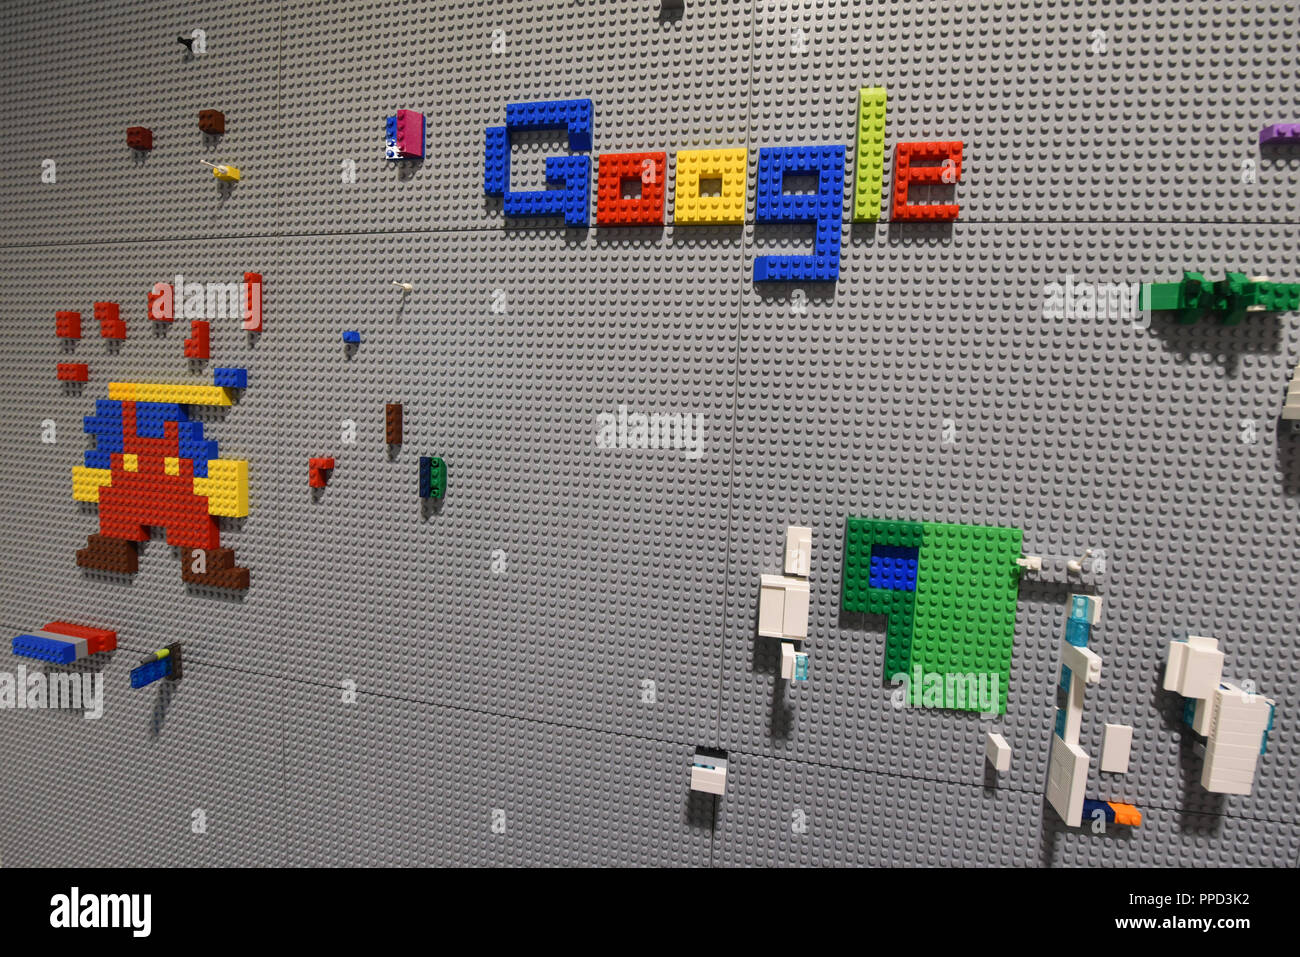 Im Haus spielen und Ruheraum für die Mitarbeiter in der Zentrale in München.  Hier ist ein Lego-Wand mit dem Logo von Google Stockfotografie - Alamy